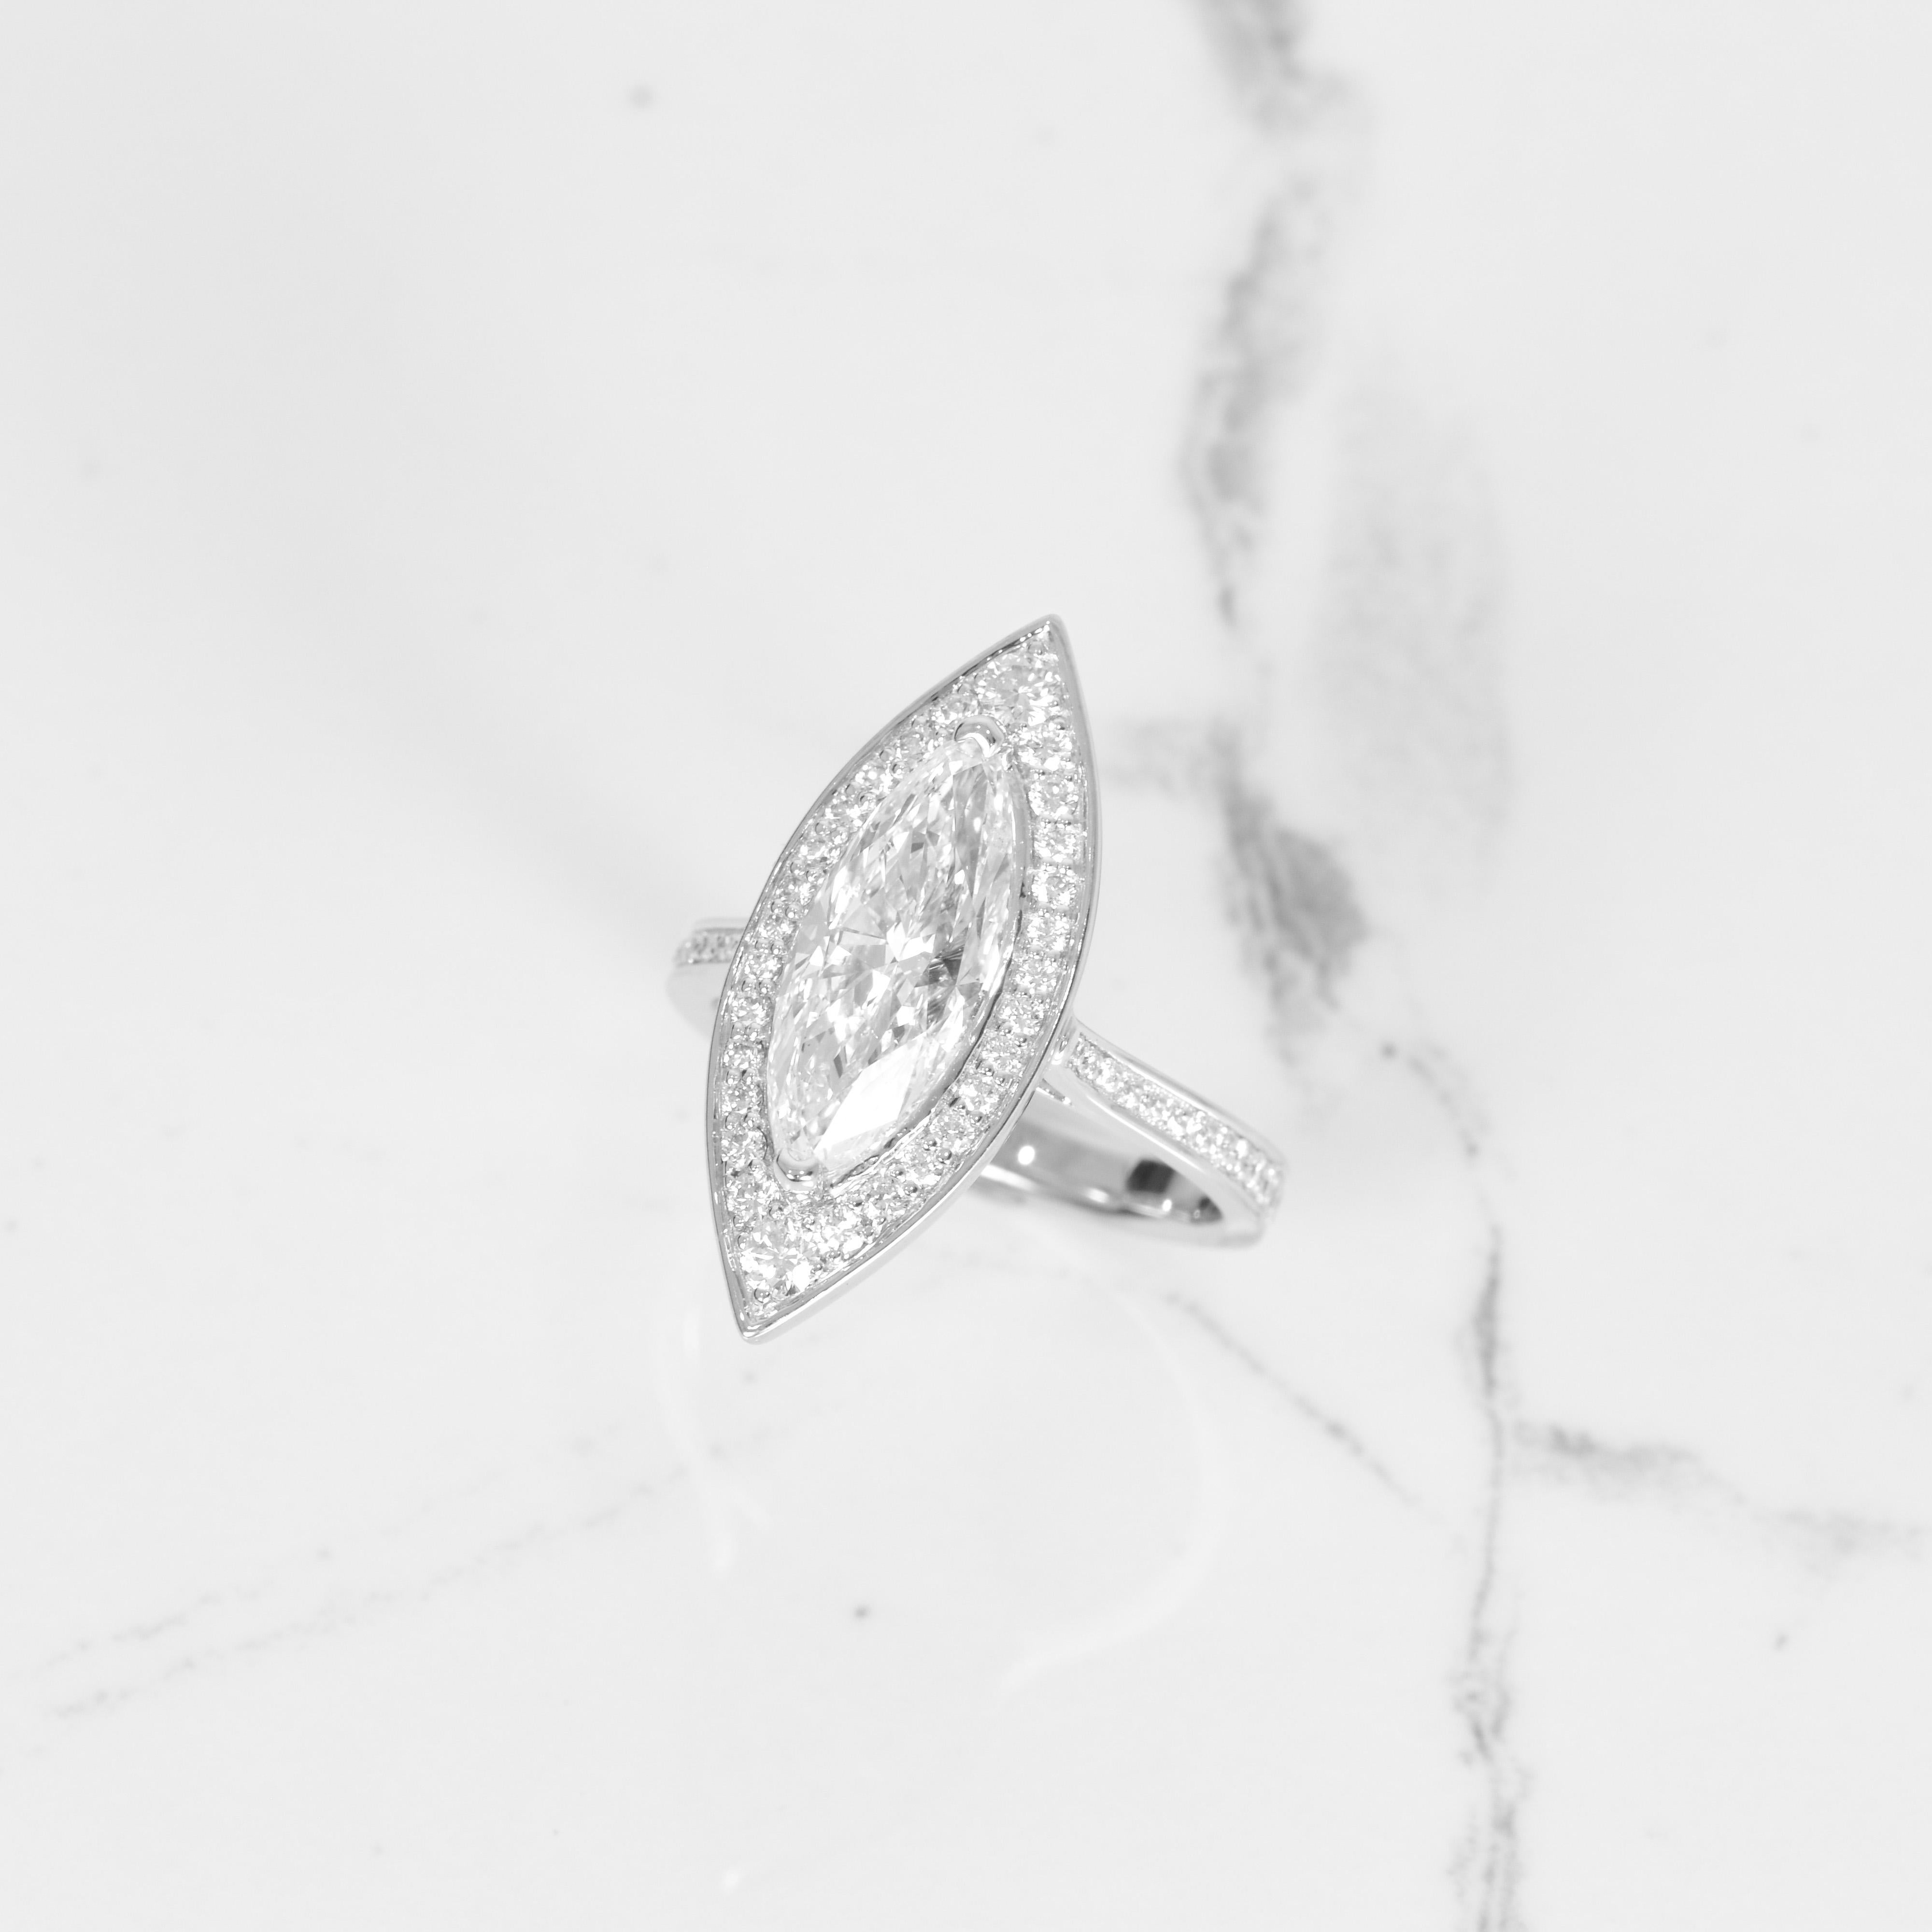 Dieser Ring ist ein echter Hingucker! Der Diamant in der Mitte ist ein wunderschöner GIA-zertifizierter 3,03ct Marquise-Diamant, der eine Farbe von G und eine Reinheit von SI2 aufweist. Der atemberaubende Stein ist von 0,55 Karat Diamanten umgeben,